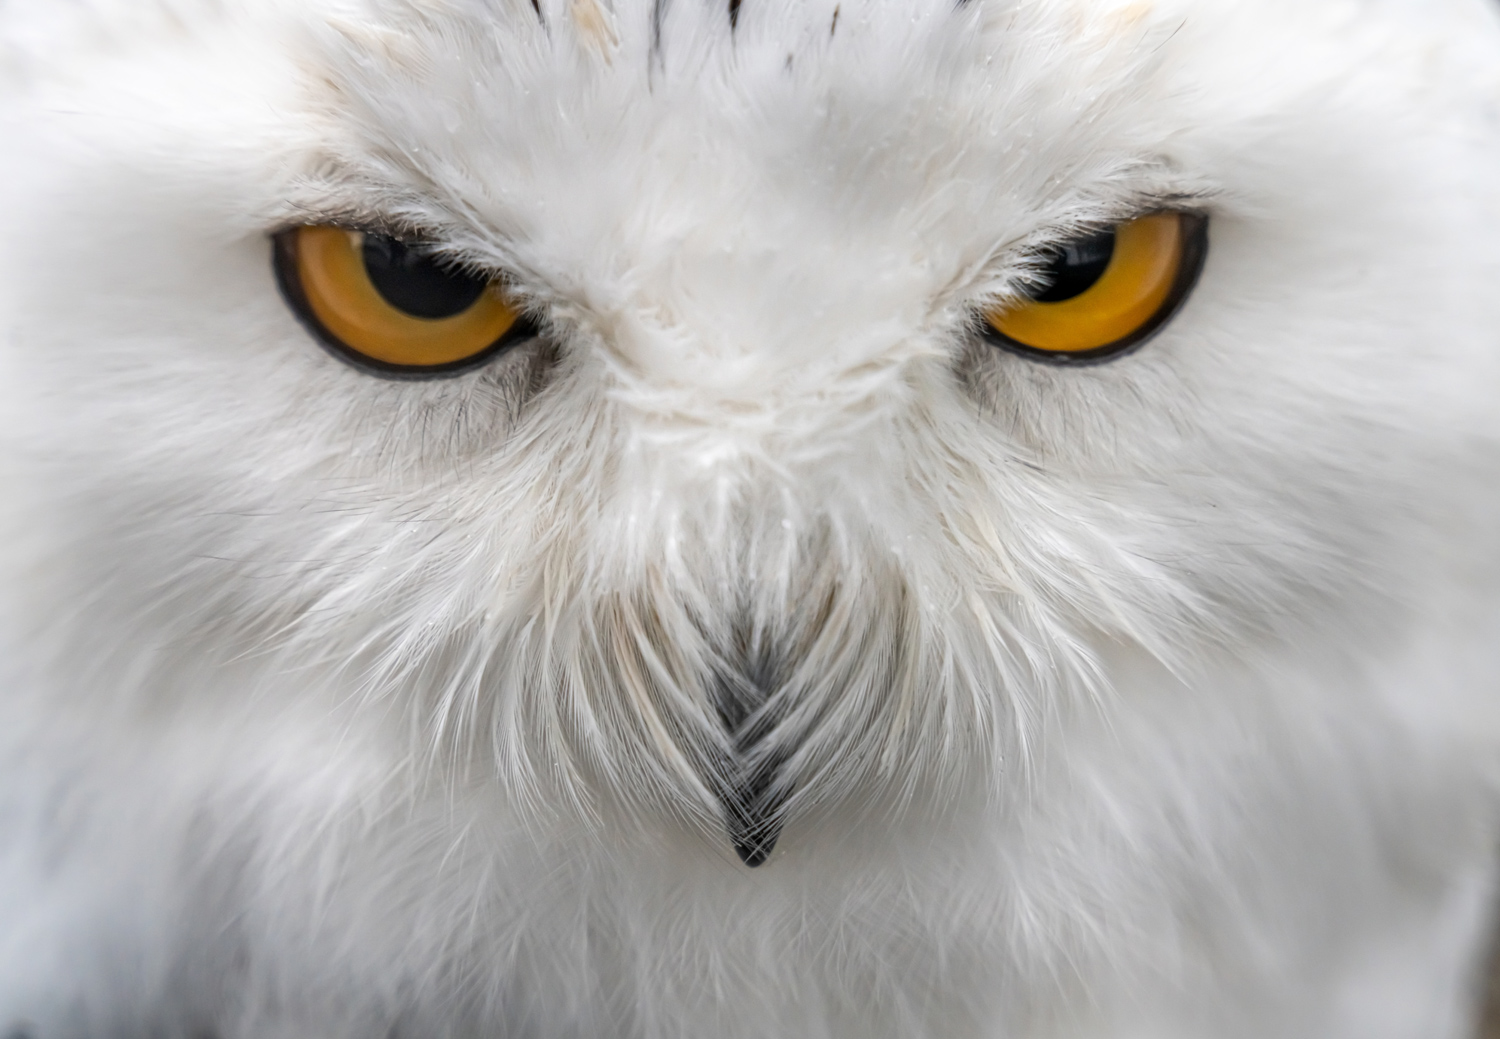 Photos: Superb Owl Sunday V - The Atlantic